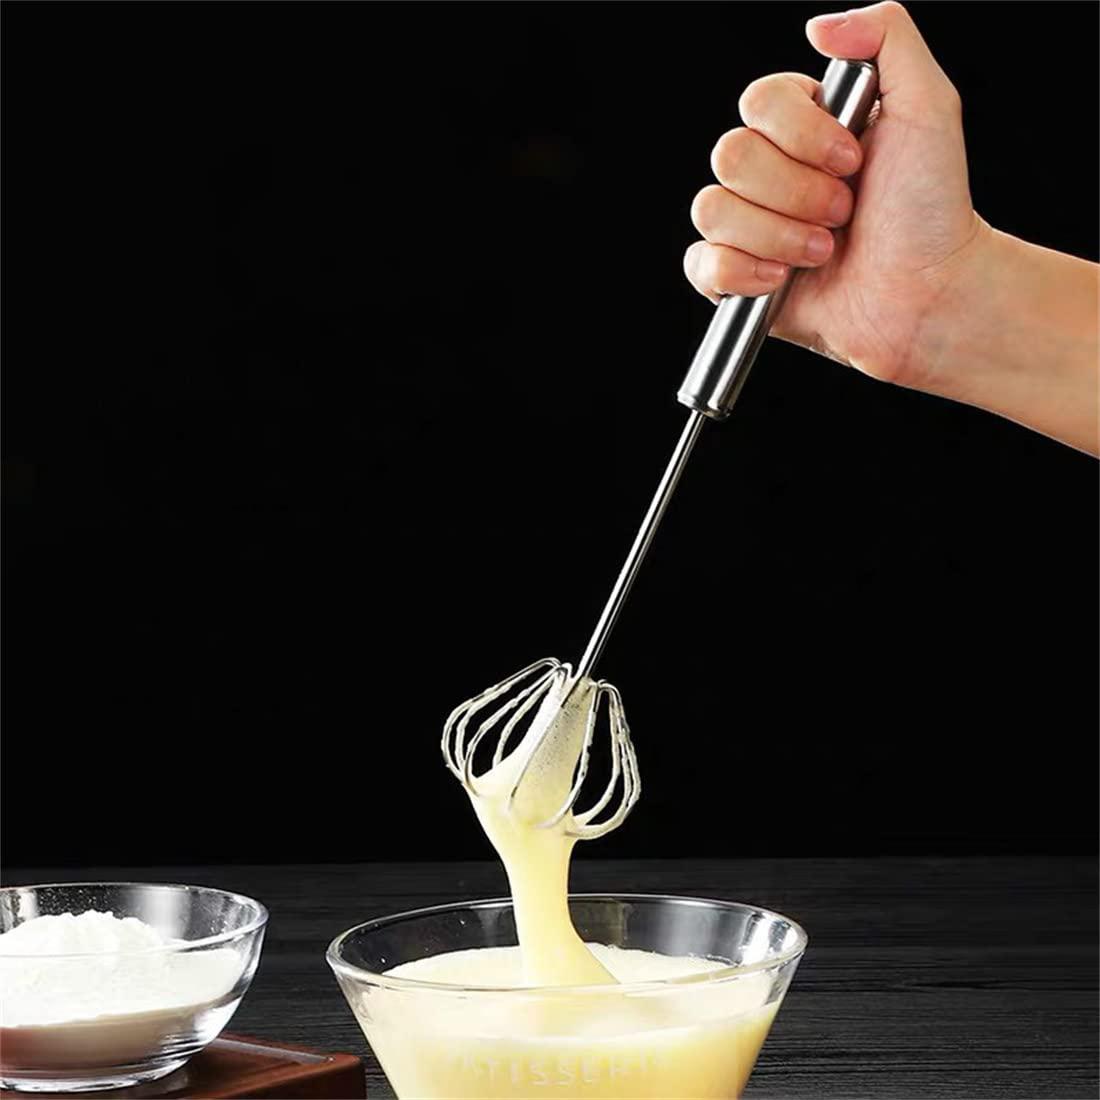 cnyejqjc egg whisk, stainless steel hand egg beater, rotating push mixer stirrer whisk, kitchen tools blender for home, versatile tool